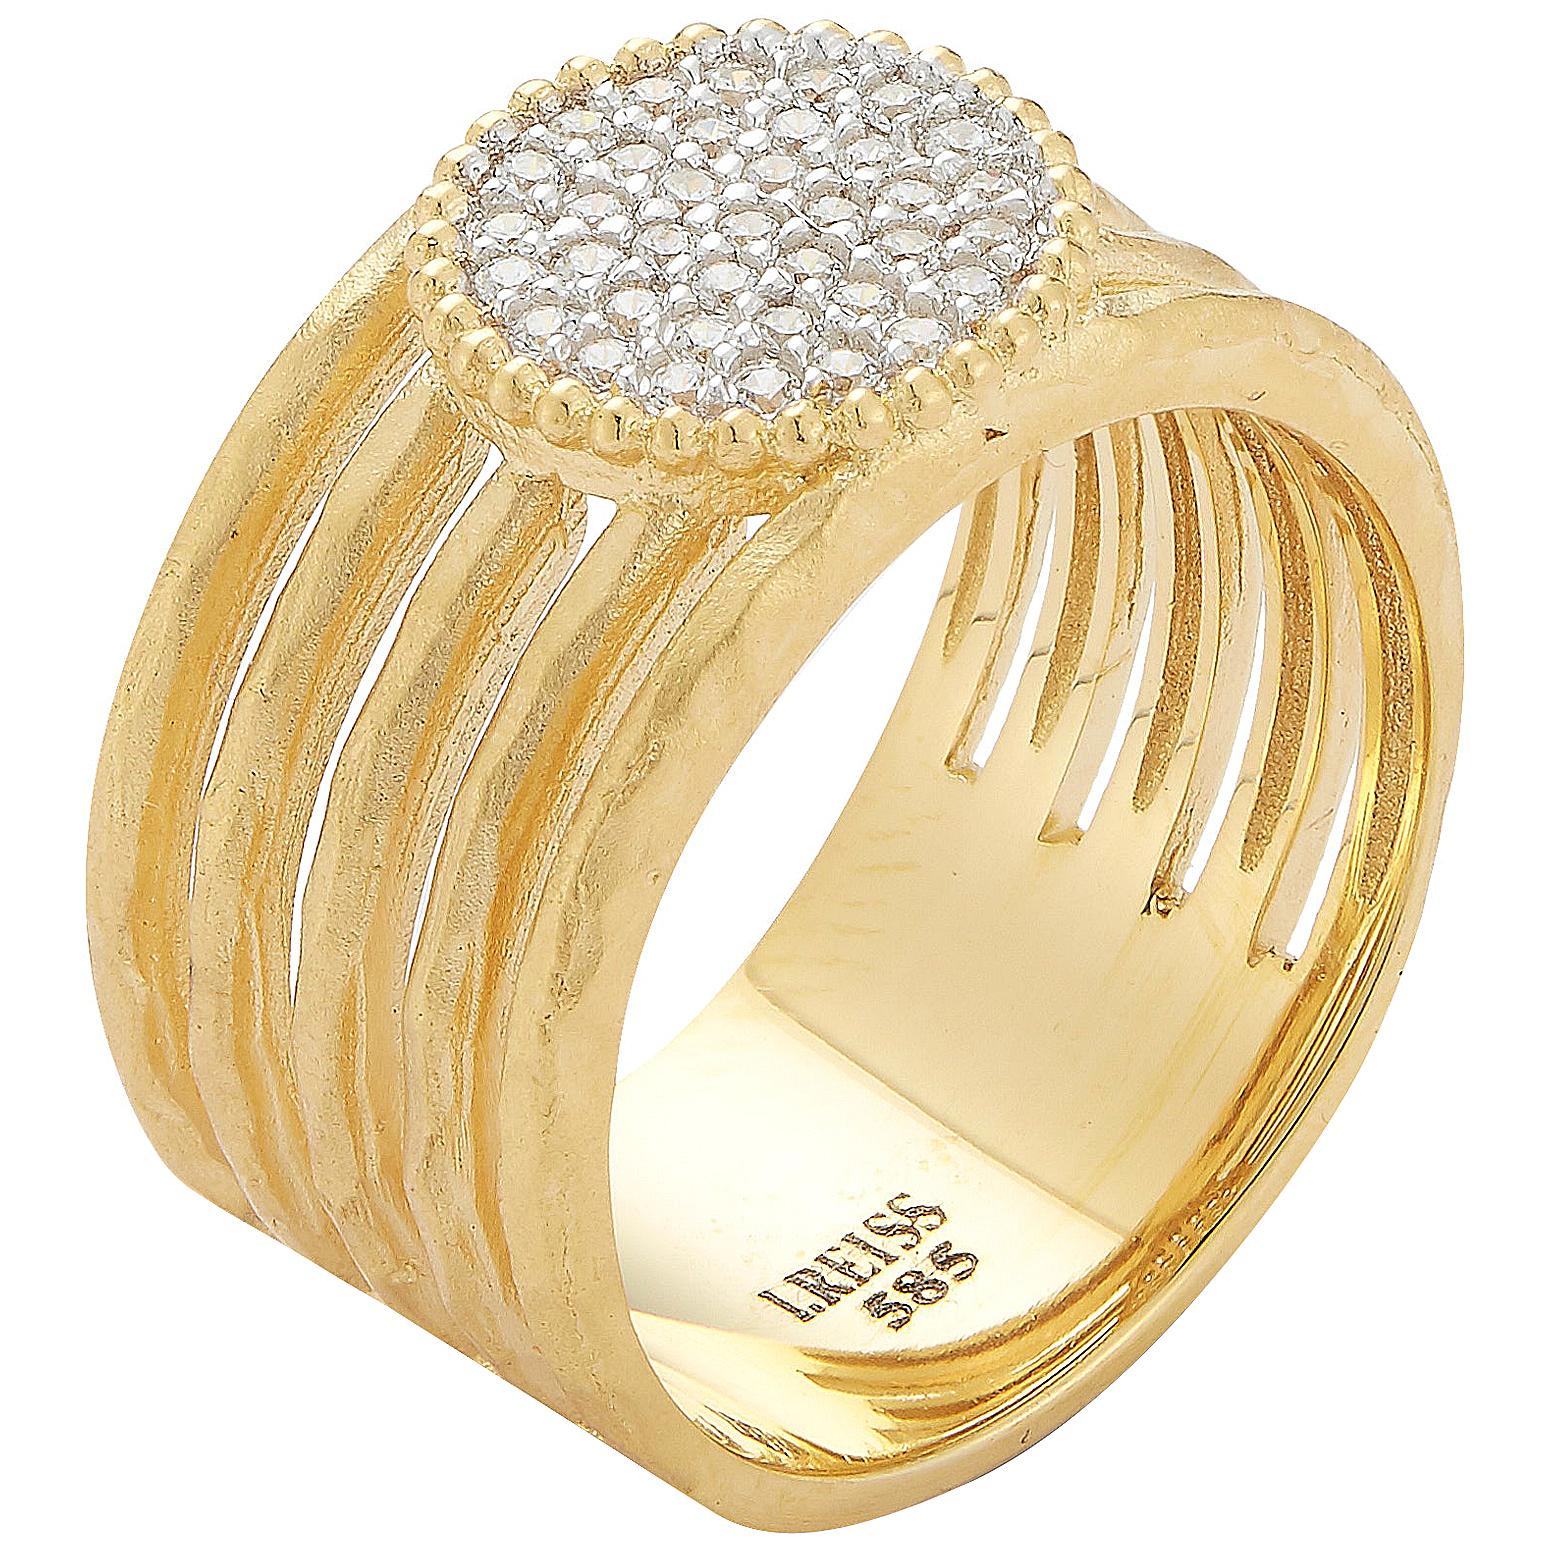 Handgefertigter Ring aus 14 Karat Gelbgold mit Cut-Out und ovalem Pavé-Motiv